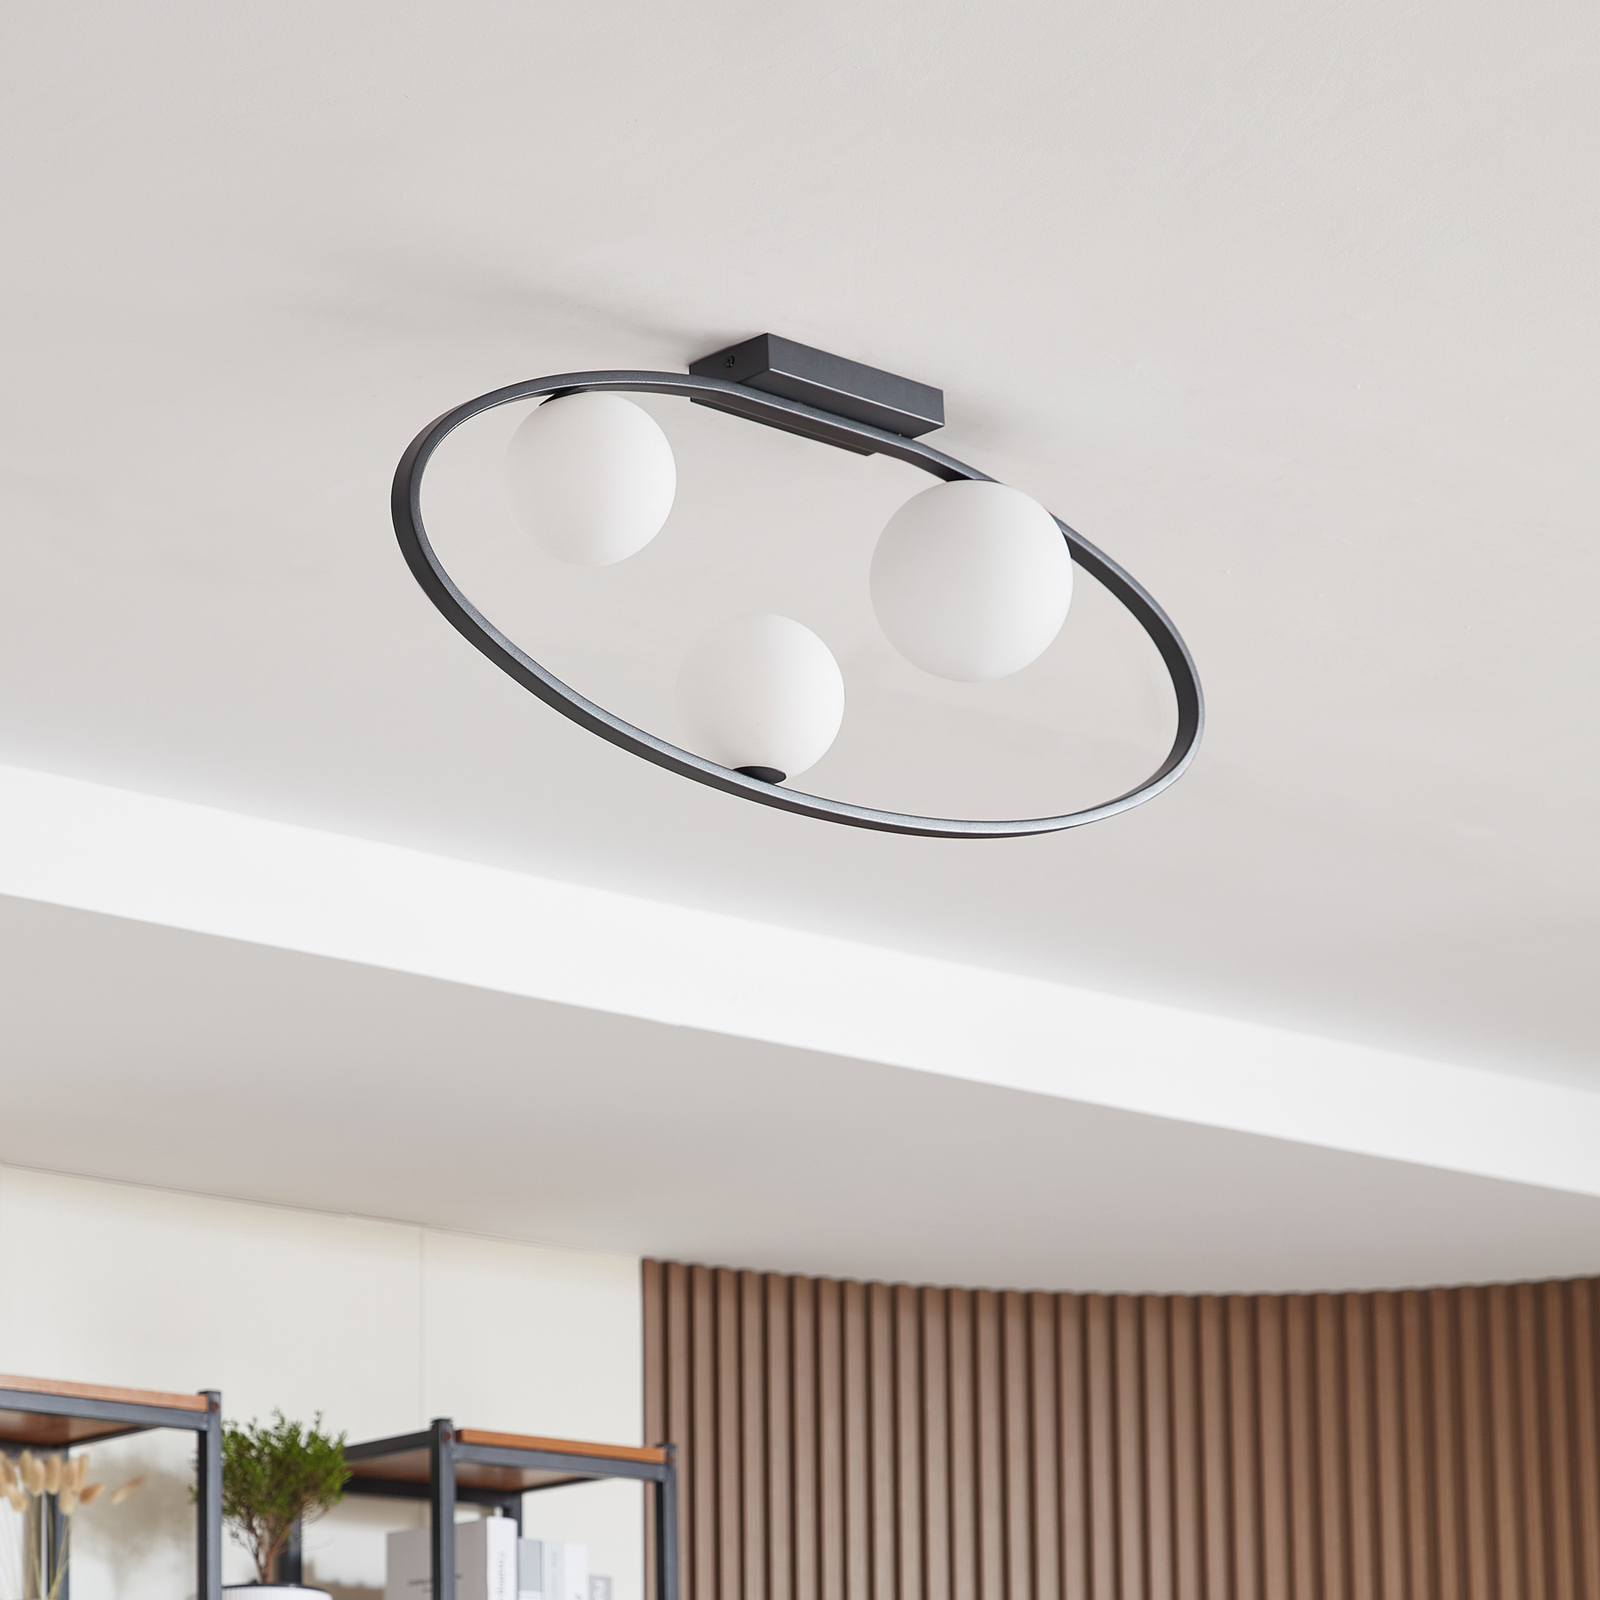 Lucande ceiling light Kulka, 3-bulb, black, glass, G9